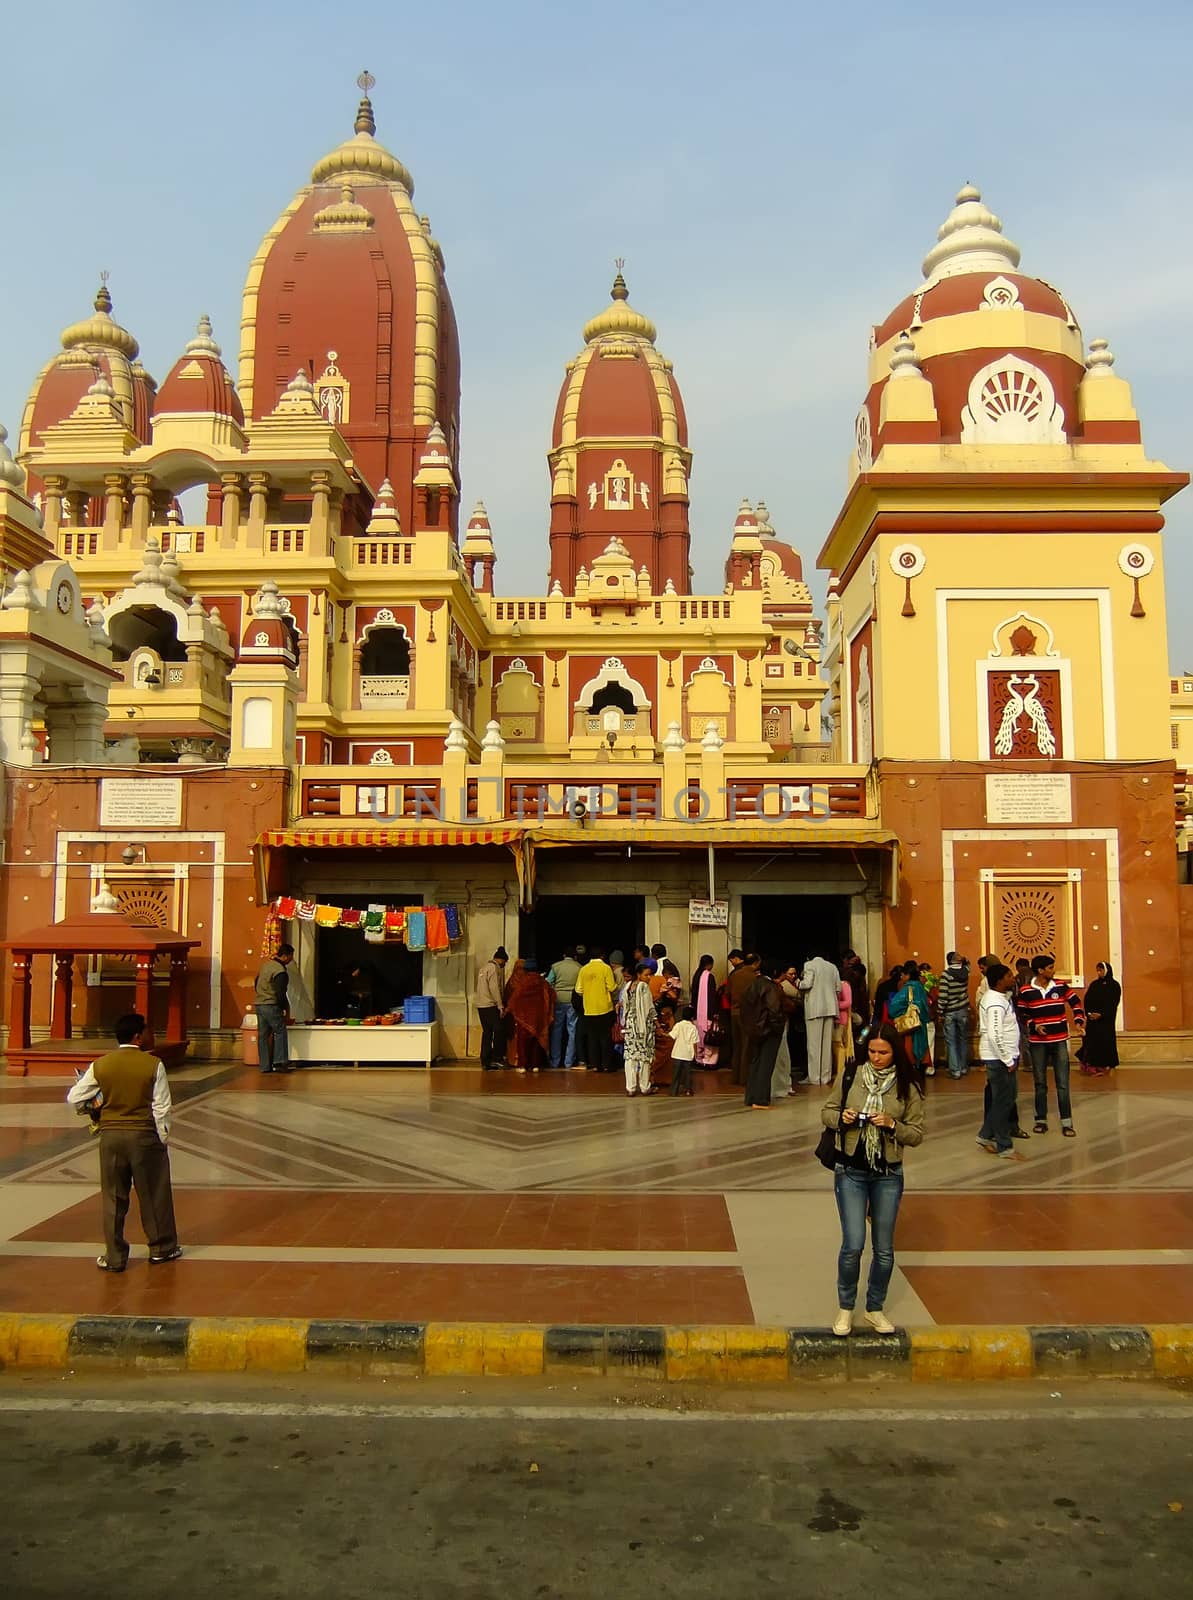 Laxminarayan temple, New Delhi by donya_nedomam